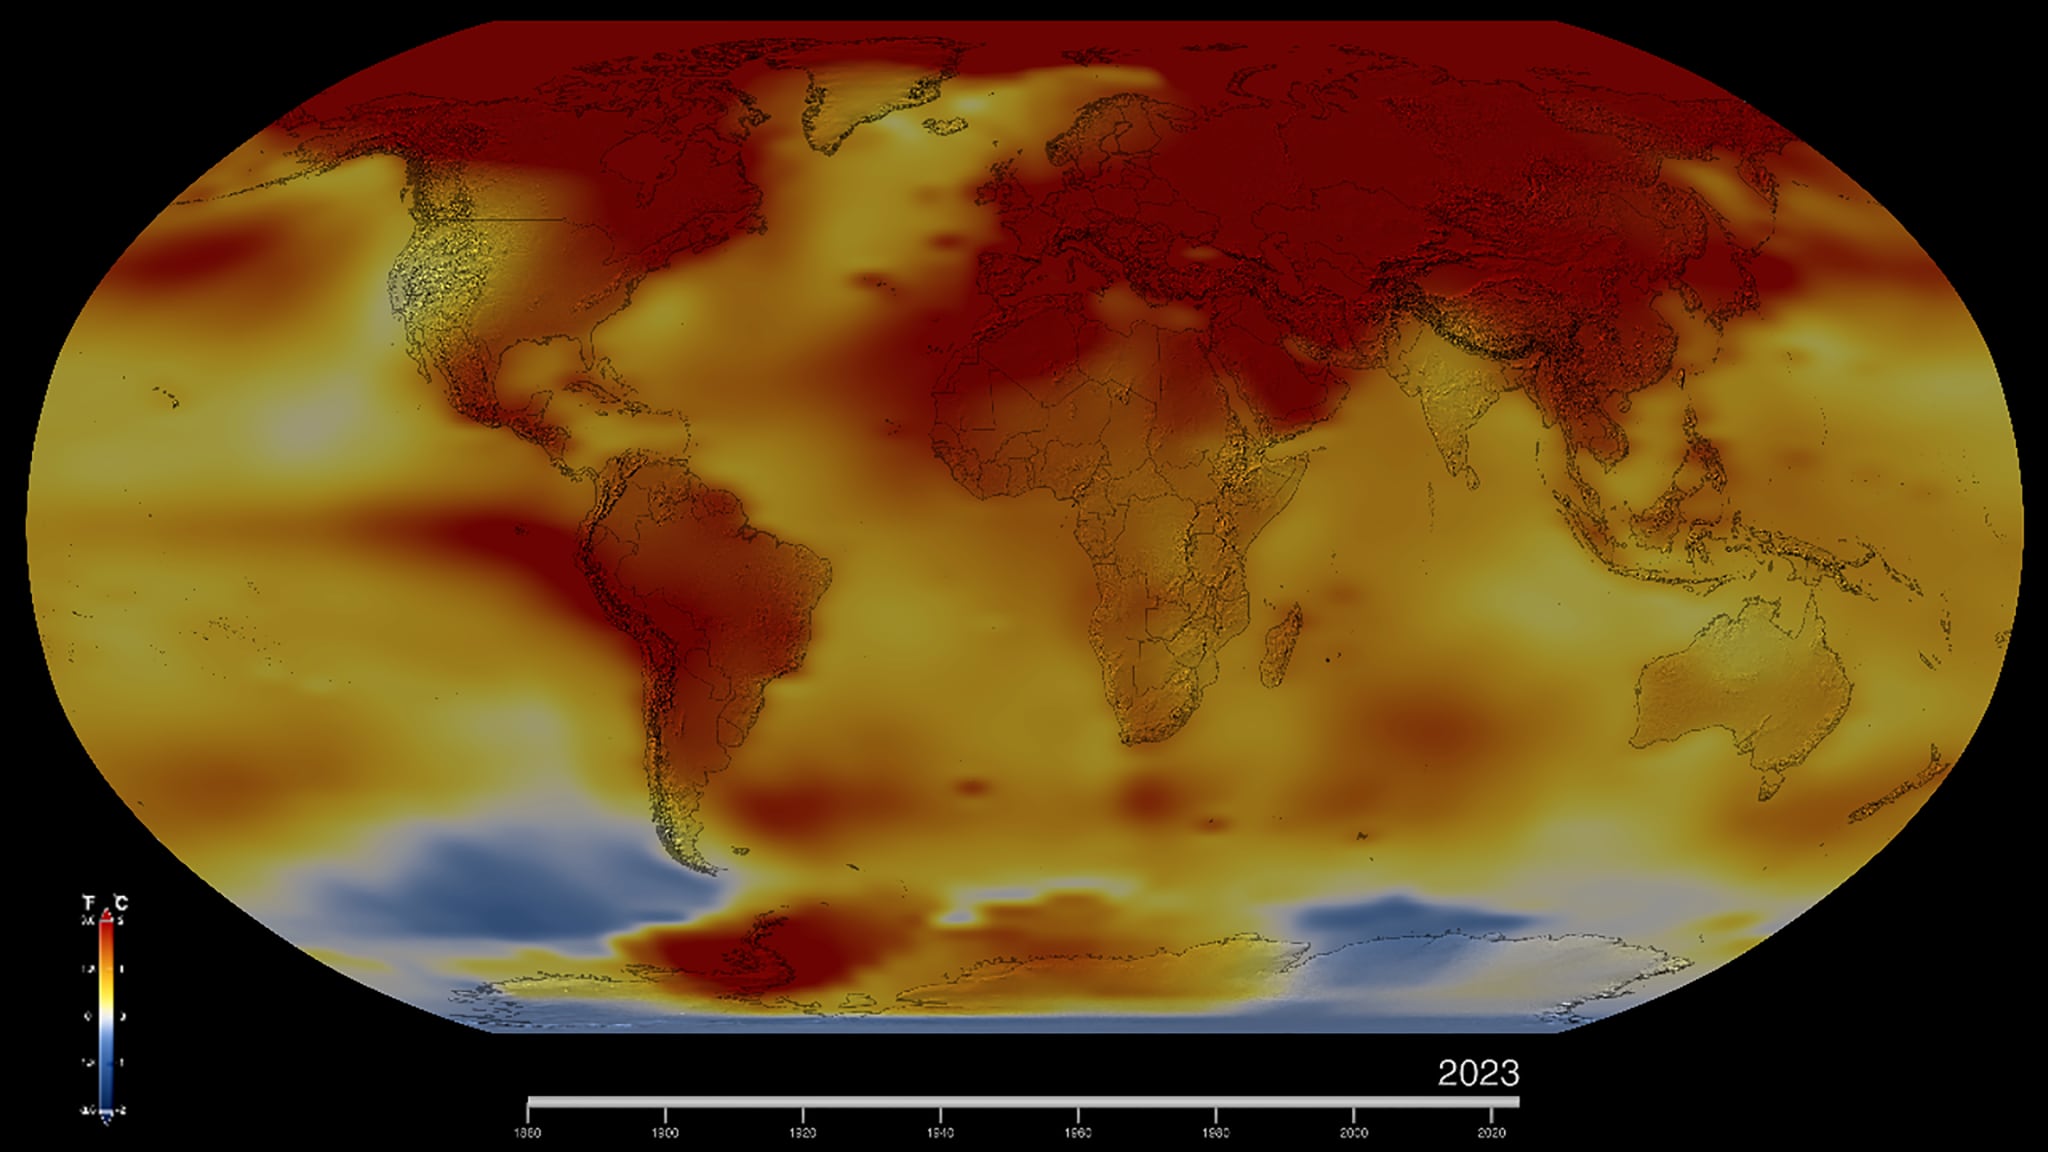 Este es el mapa de la Tierra en 2023, el cual muestra las anomalías en las temperaturas, o cuán fría o caliente estuvo cada región del planeta comparados con los promedios entre 1951 y 1980. Las temperaturas normales se muestran en blanco; las temperaturas más altas de lo normal, en rojo y anaranjado; y las más bajas en azul. Fotografía: NASA’s Scientific Visualization Studio